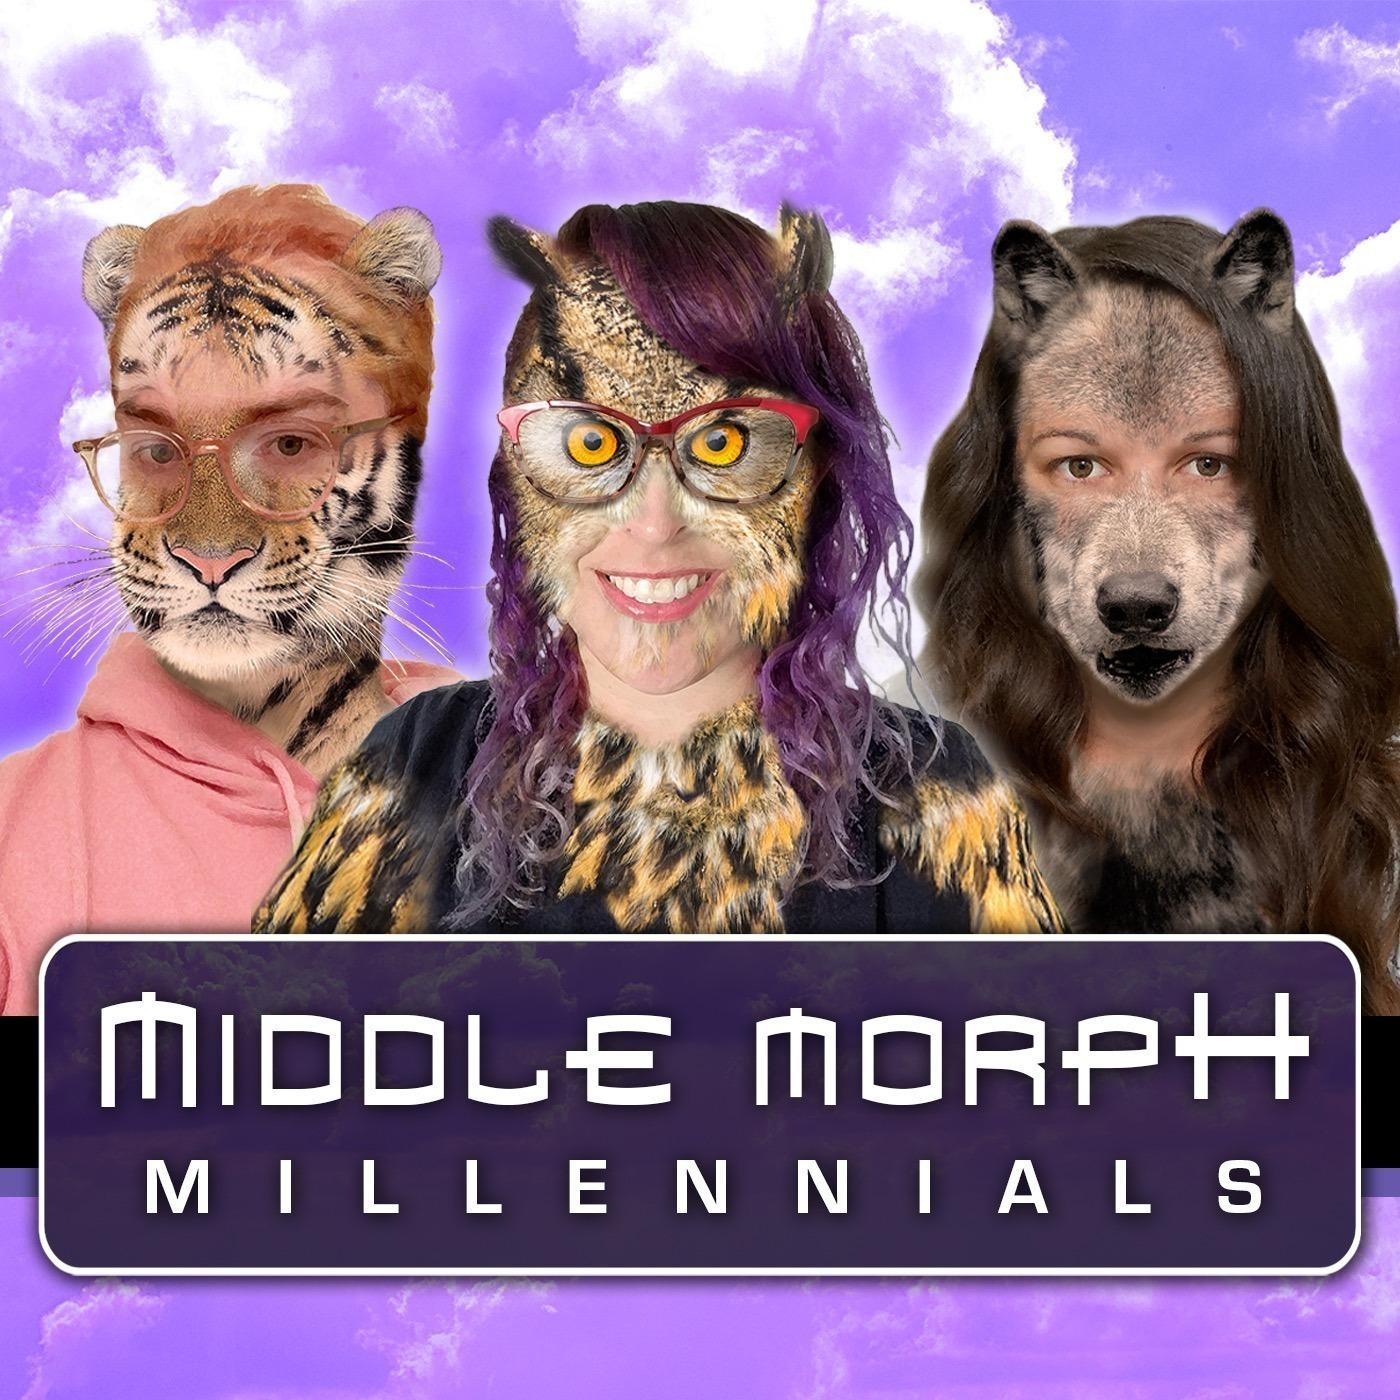 Middle Morph Millennials